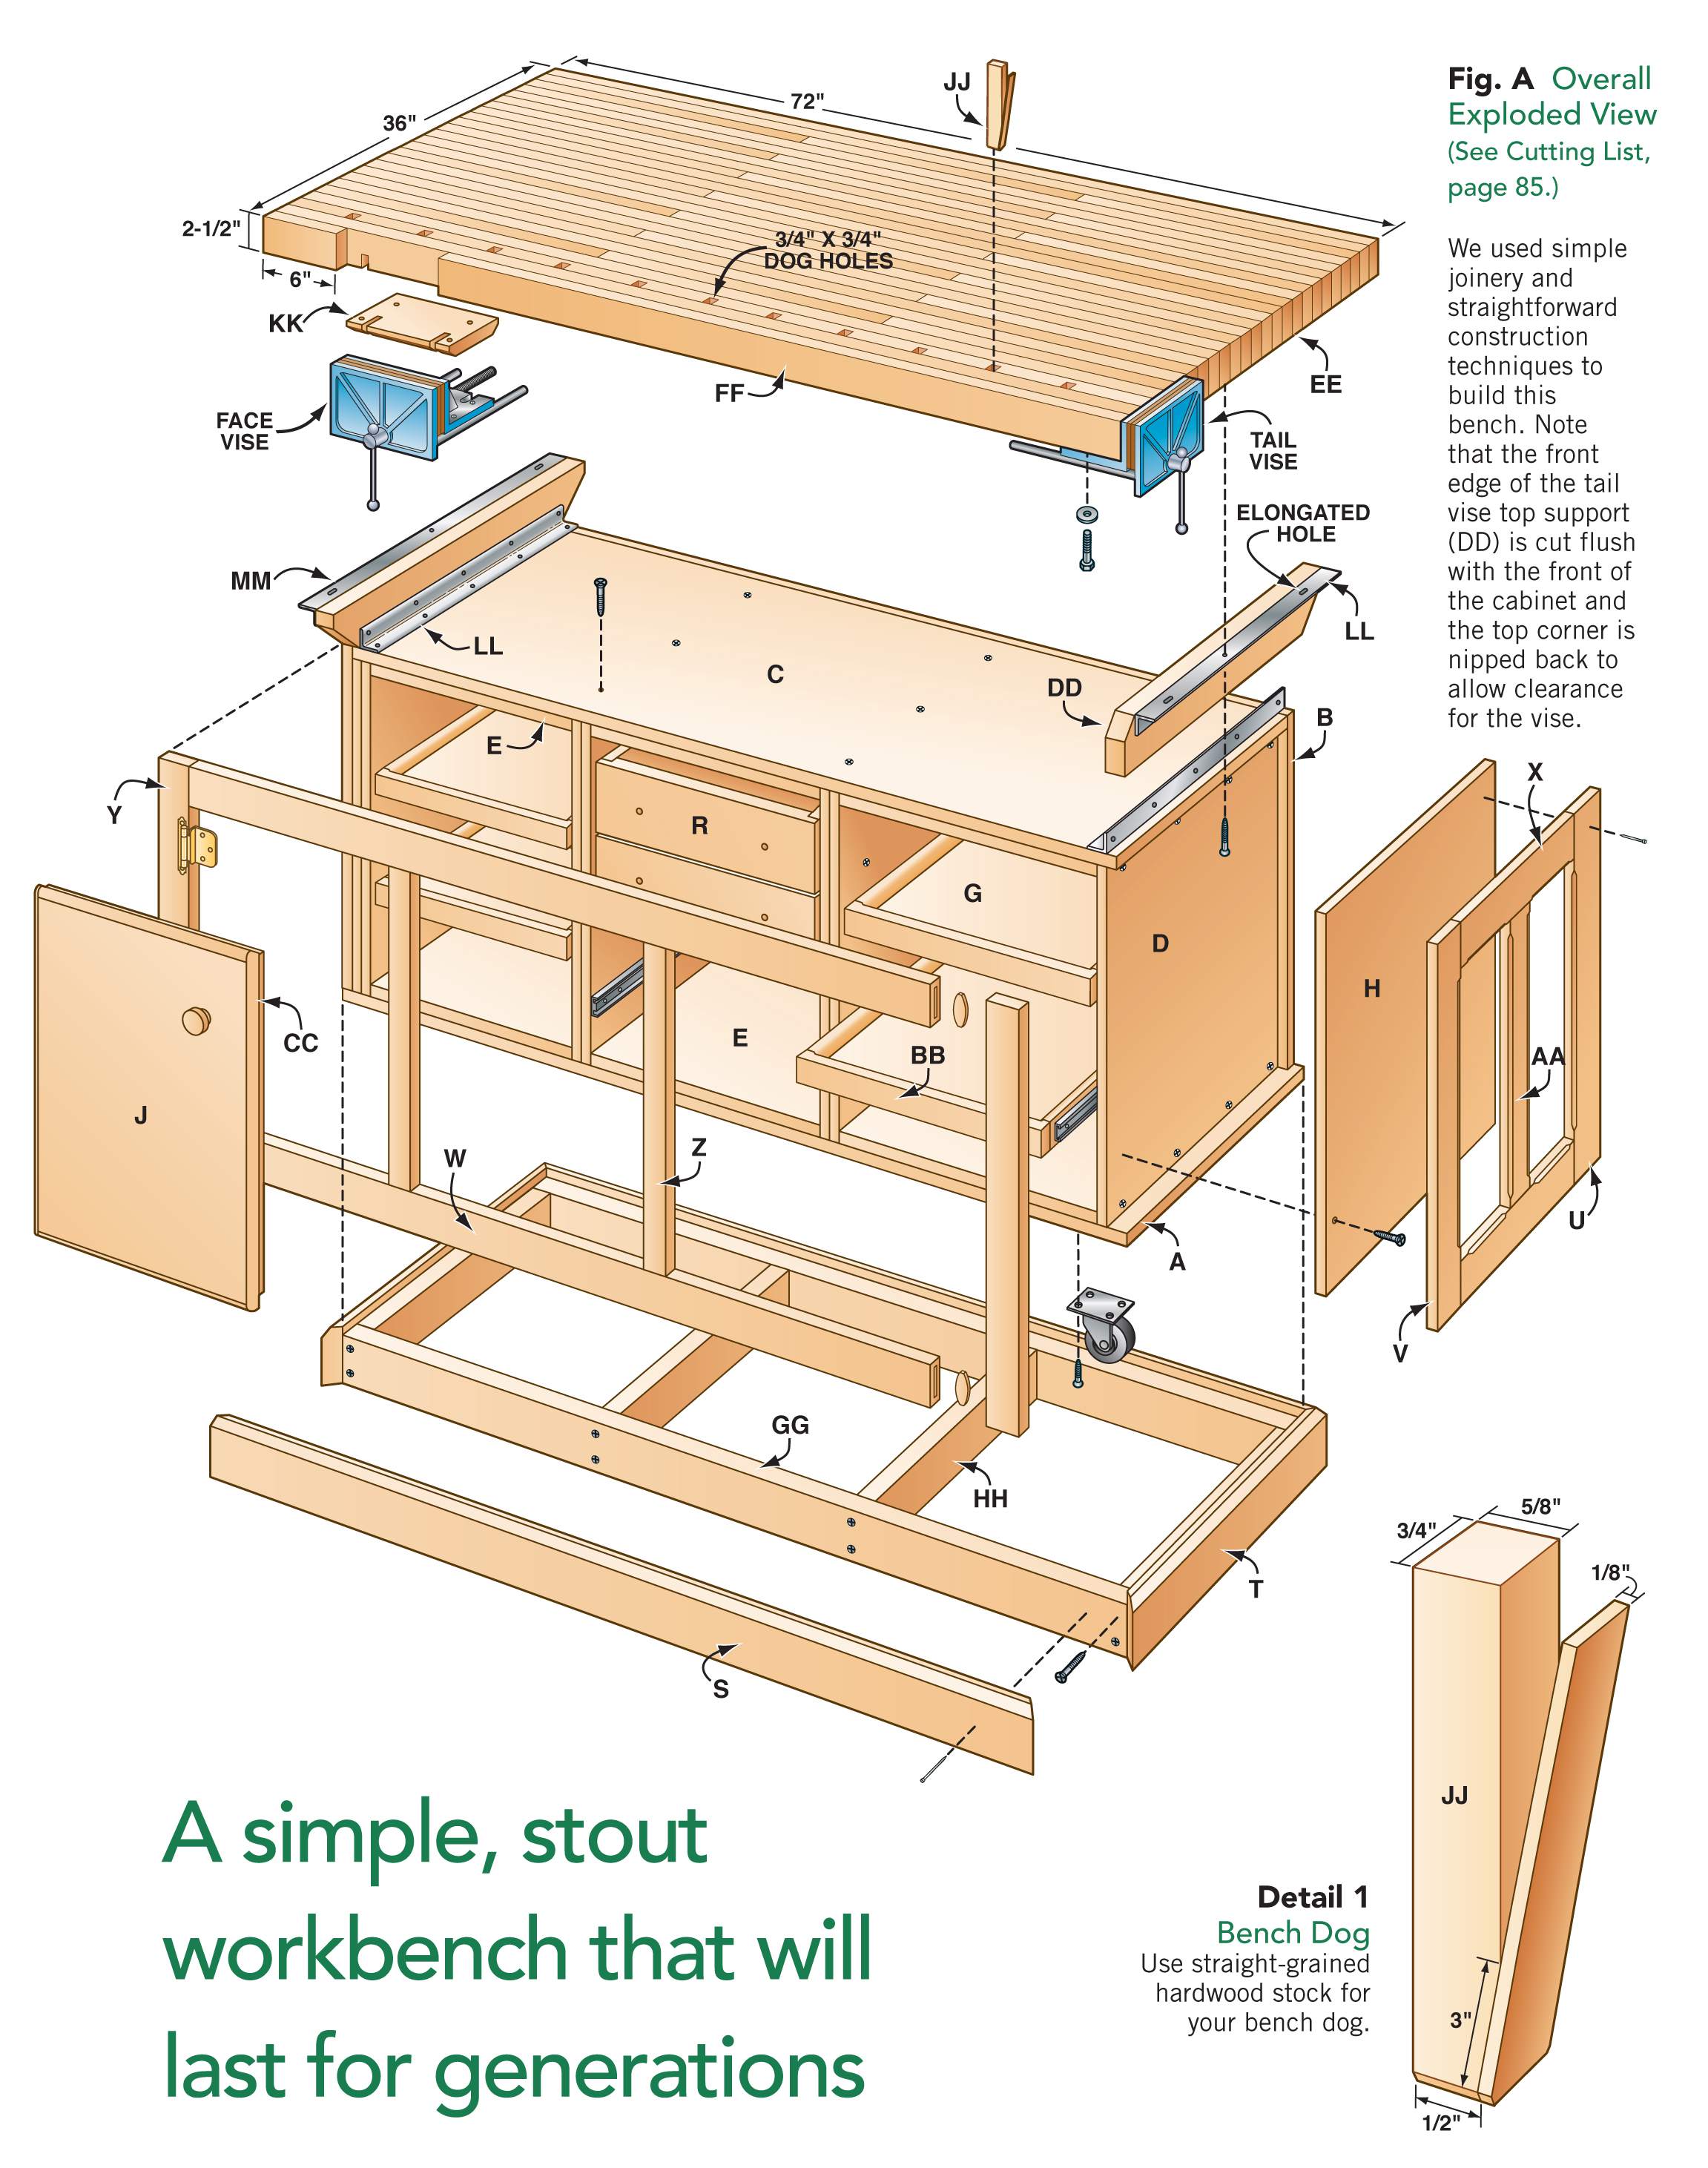 AW Extra - Dream Workbench - Popular Woodworking Magazine